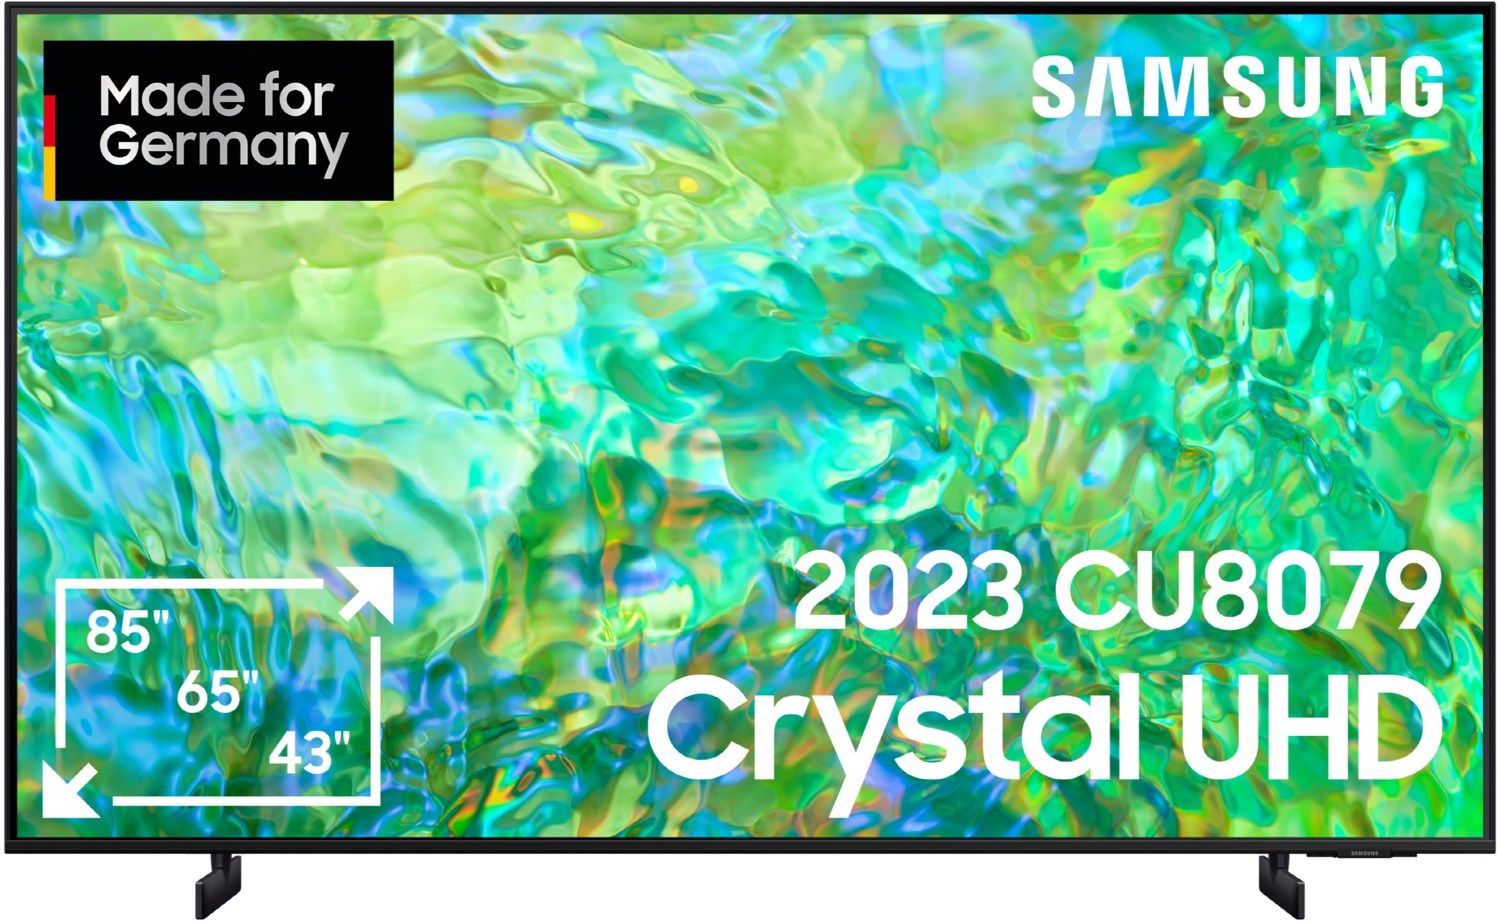 Samsung Chrystal UHD TV 4K 75 Zoll (189 cm) schwarz von Samsung